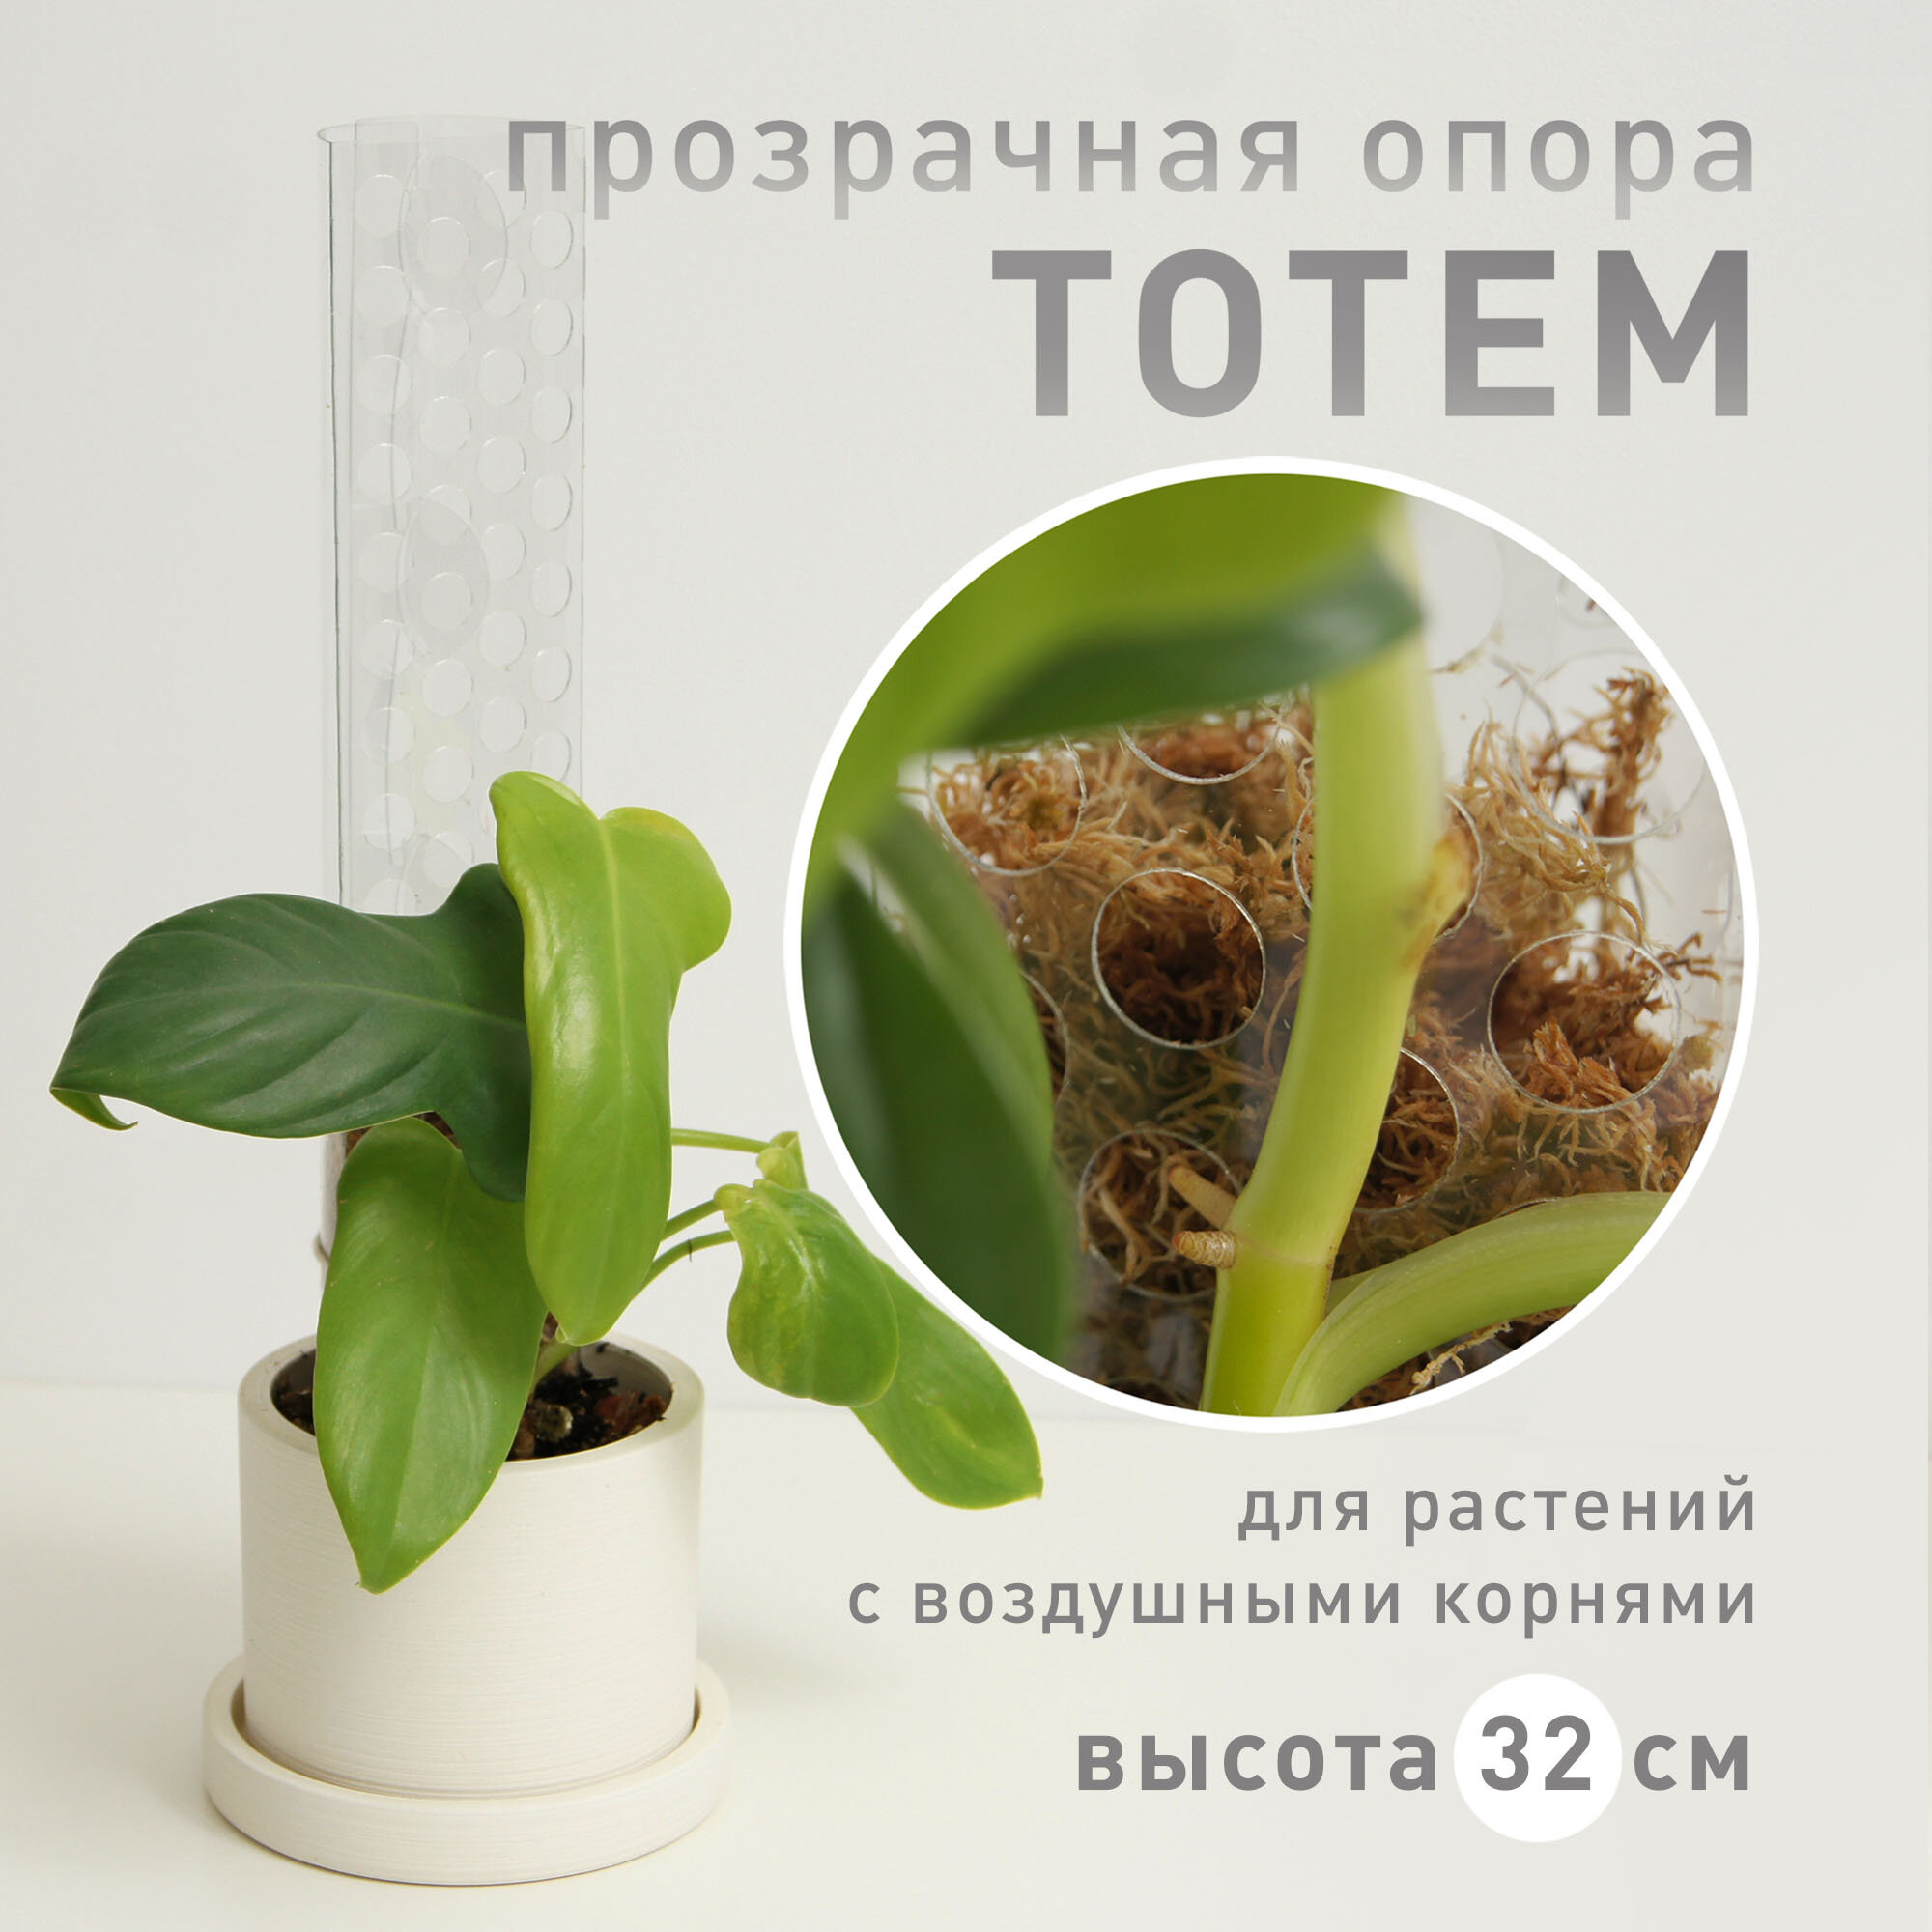 Опора для растений Plant*Secrets тотем, высота 32 см